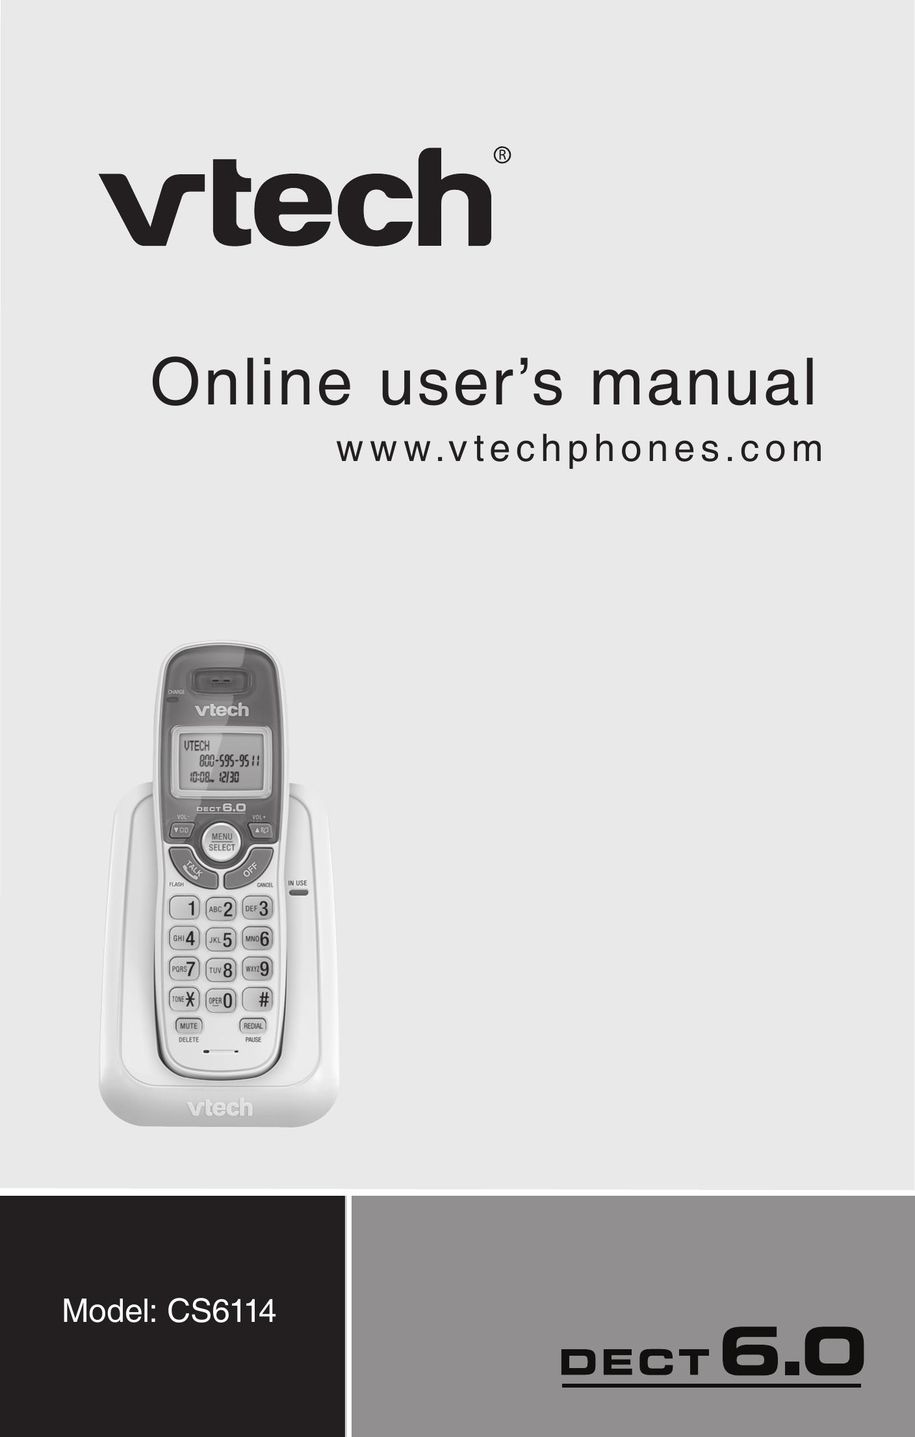 VTech CS6114 Cell Phone User Manual